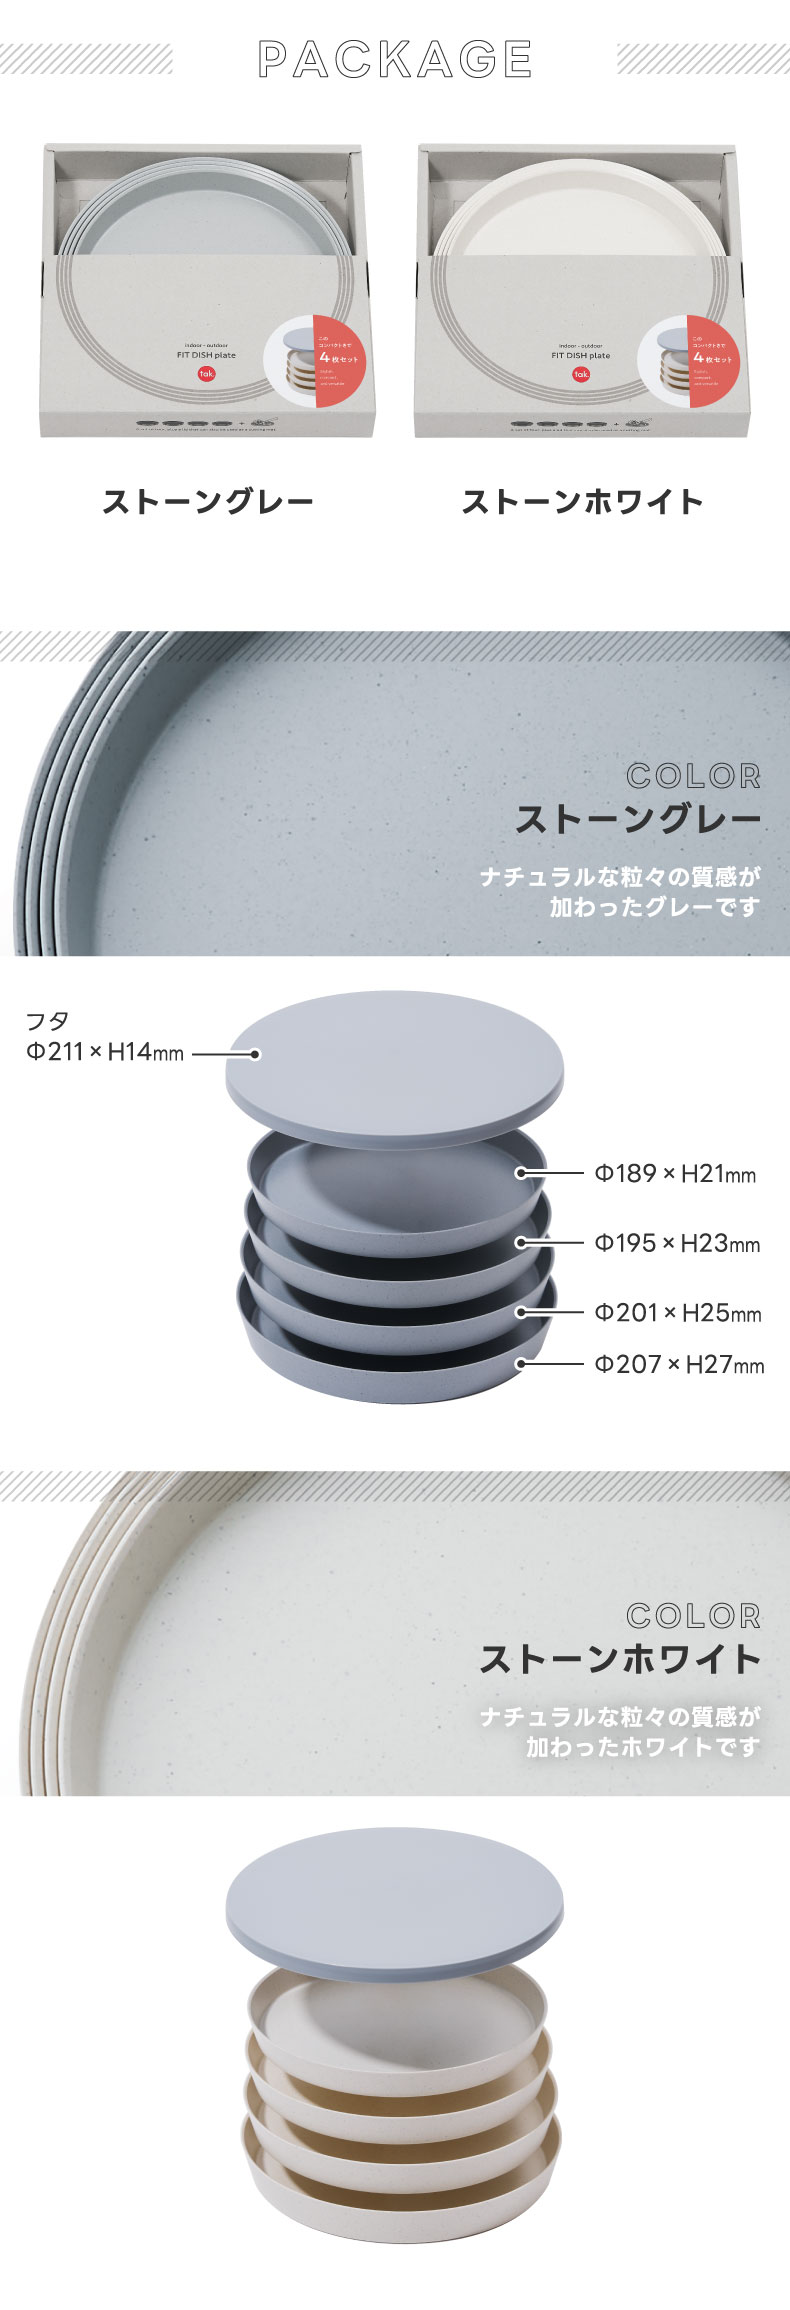 食器セット プレート 4個セット tak タック フィットディッシュ 日本製 蓋付き 器 うつわ お皿 皿 中皿 電子レンジ対応 食洗機対応 安心  安全 樹脂 入れ子 収納